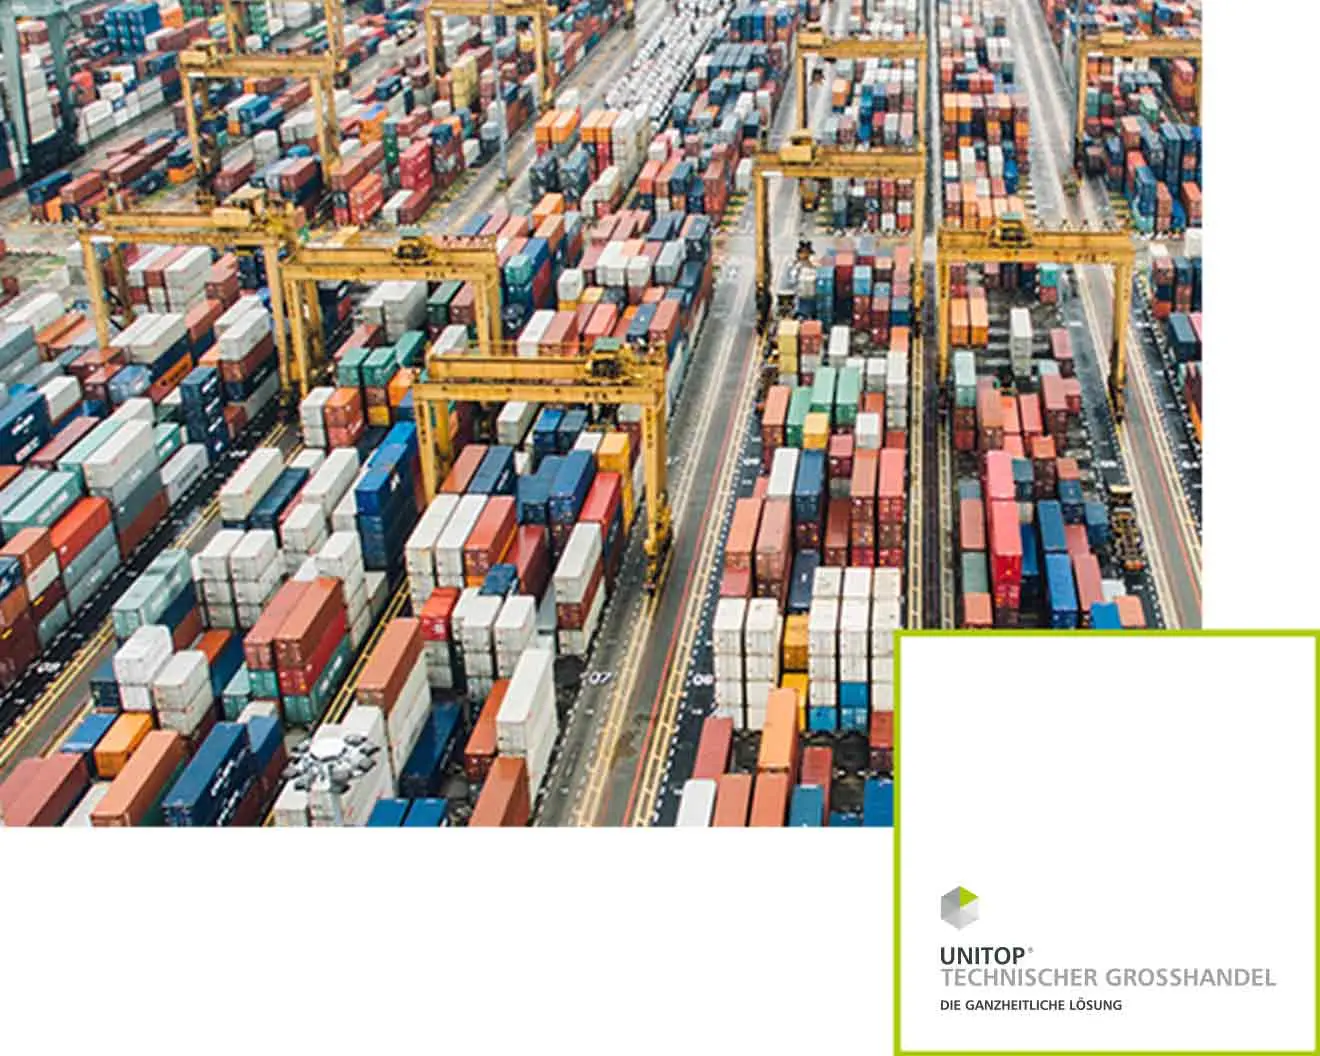 Luftaufnahme eines großen Containerhafens mit zahlreichen bunten Versandcontainern. Rechts unten ist das Logo von unitop Technischer Großhandel zu sehen.